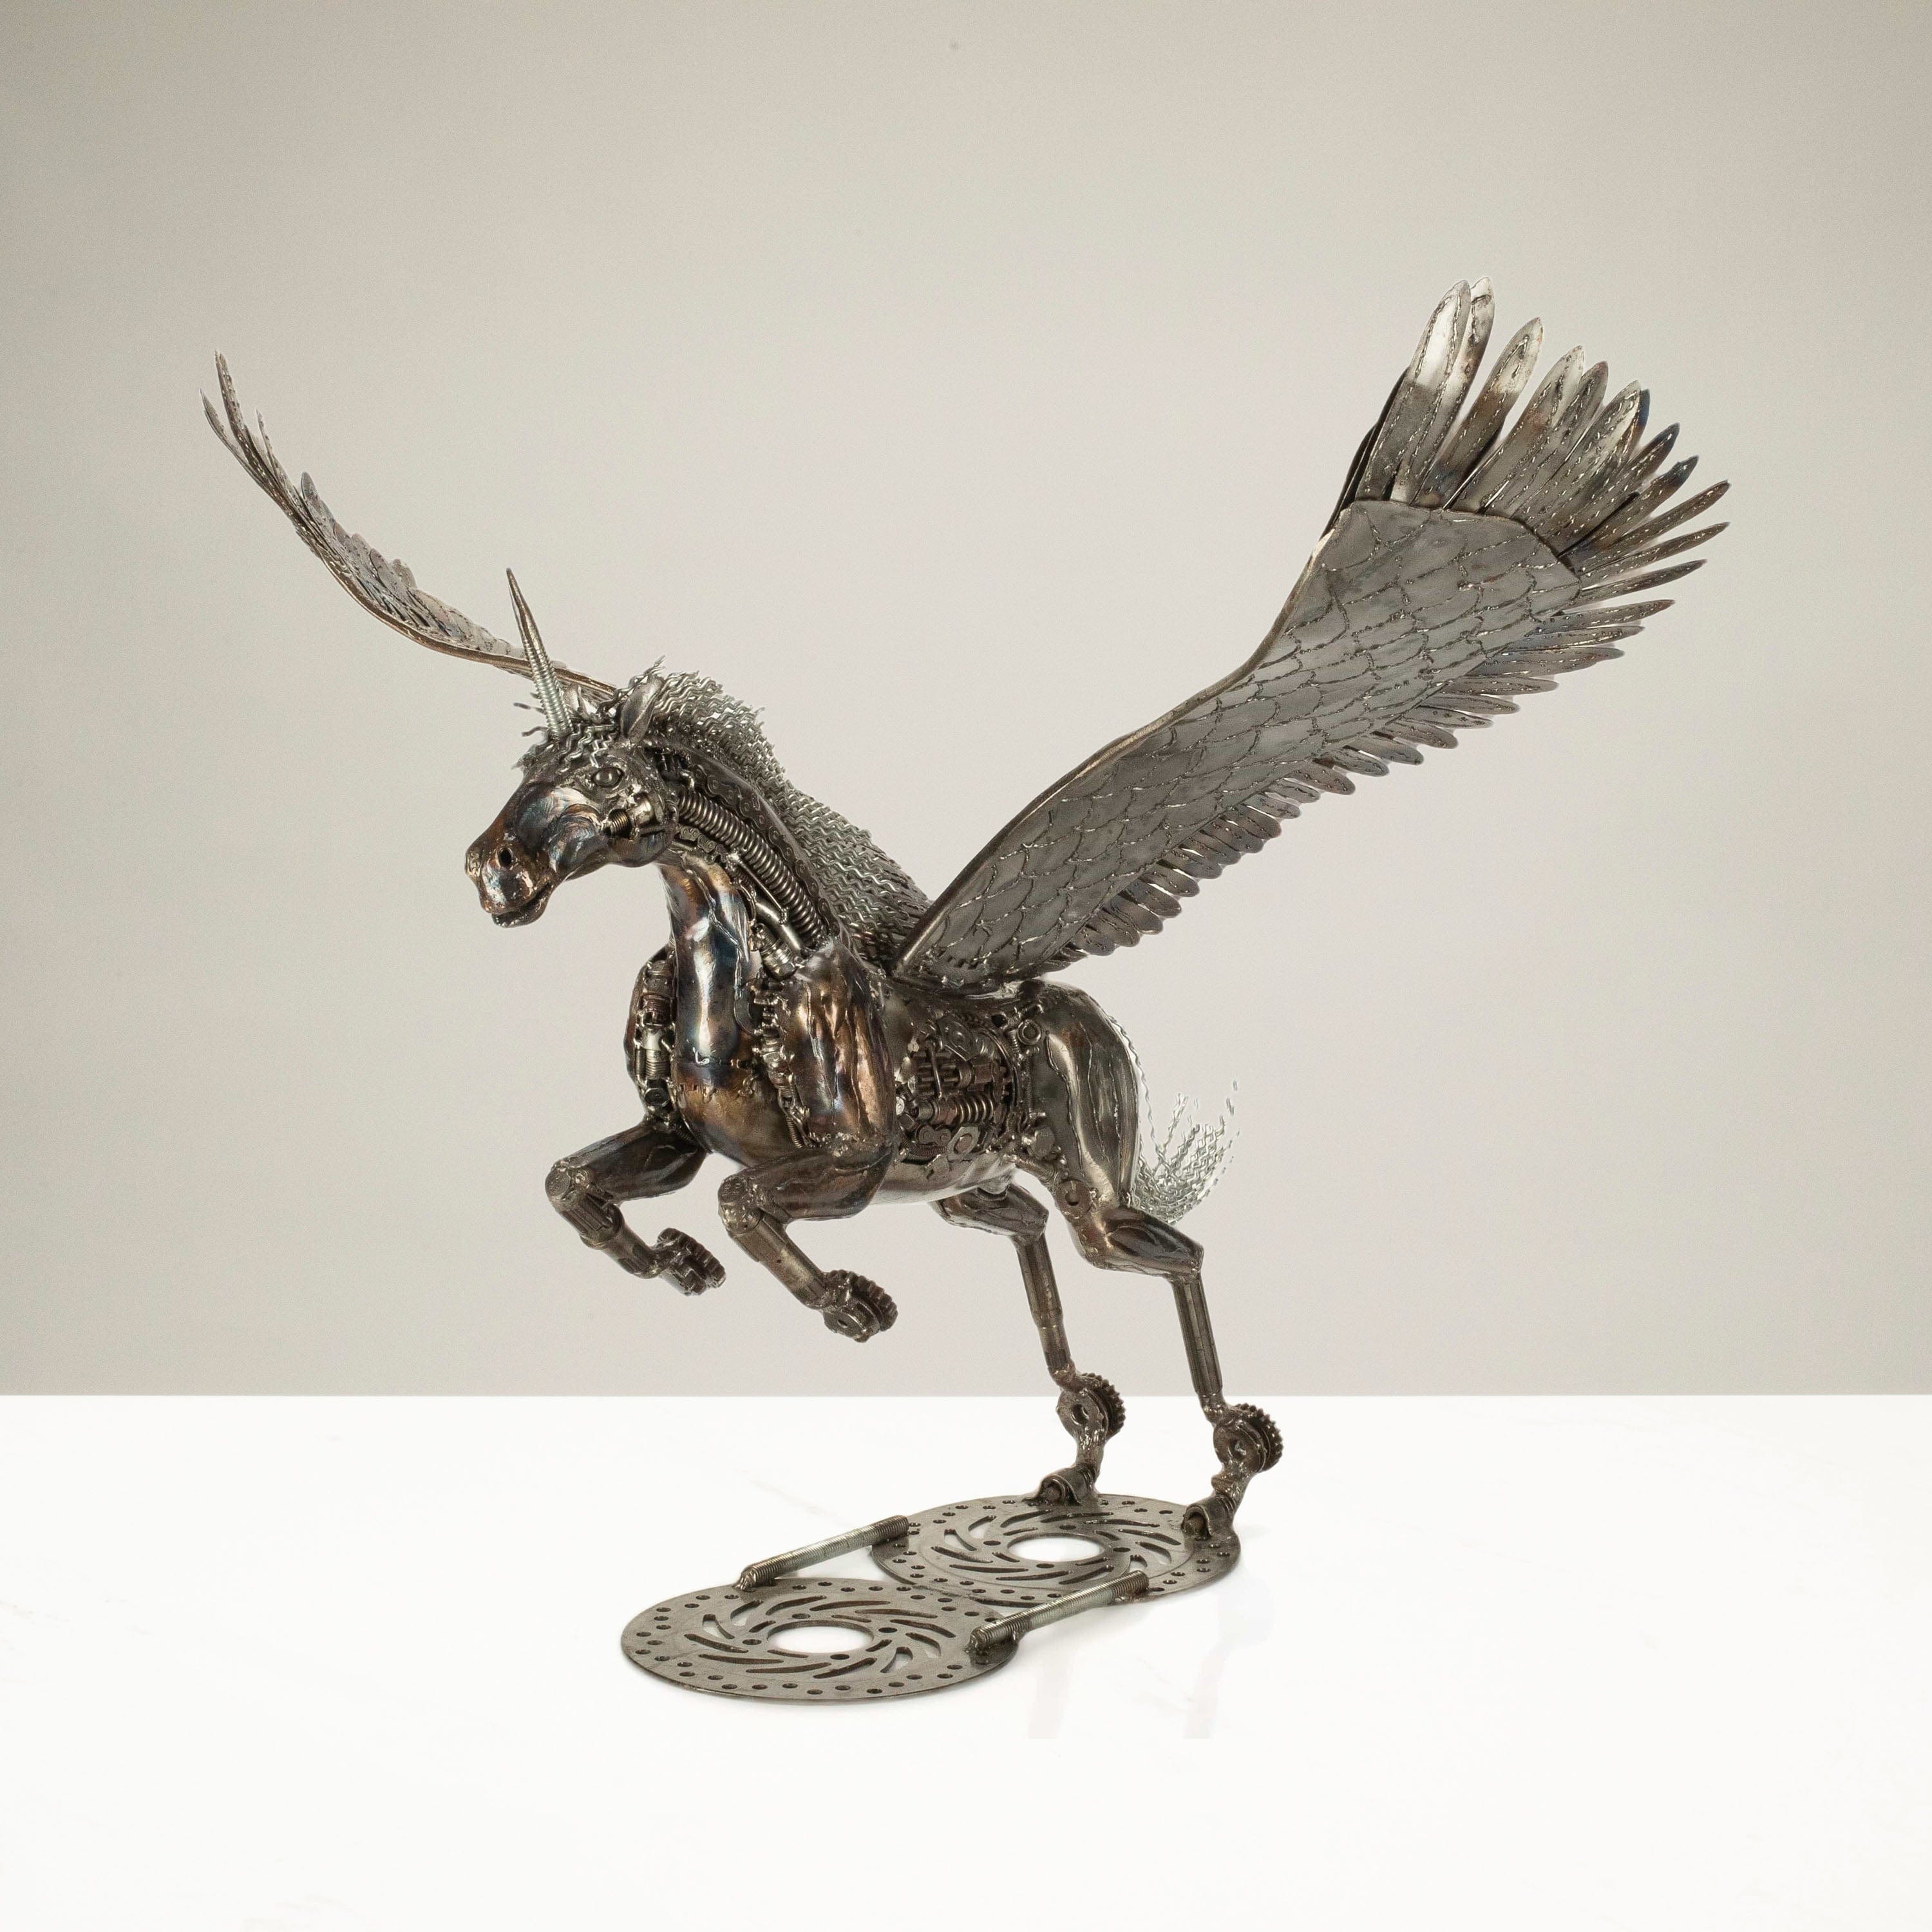 KALIFANO Recycled Metal Art 38" Pegasus Inspired Recycled Metal Art Sculpture RMS-PEG96x72-PK